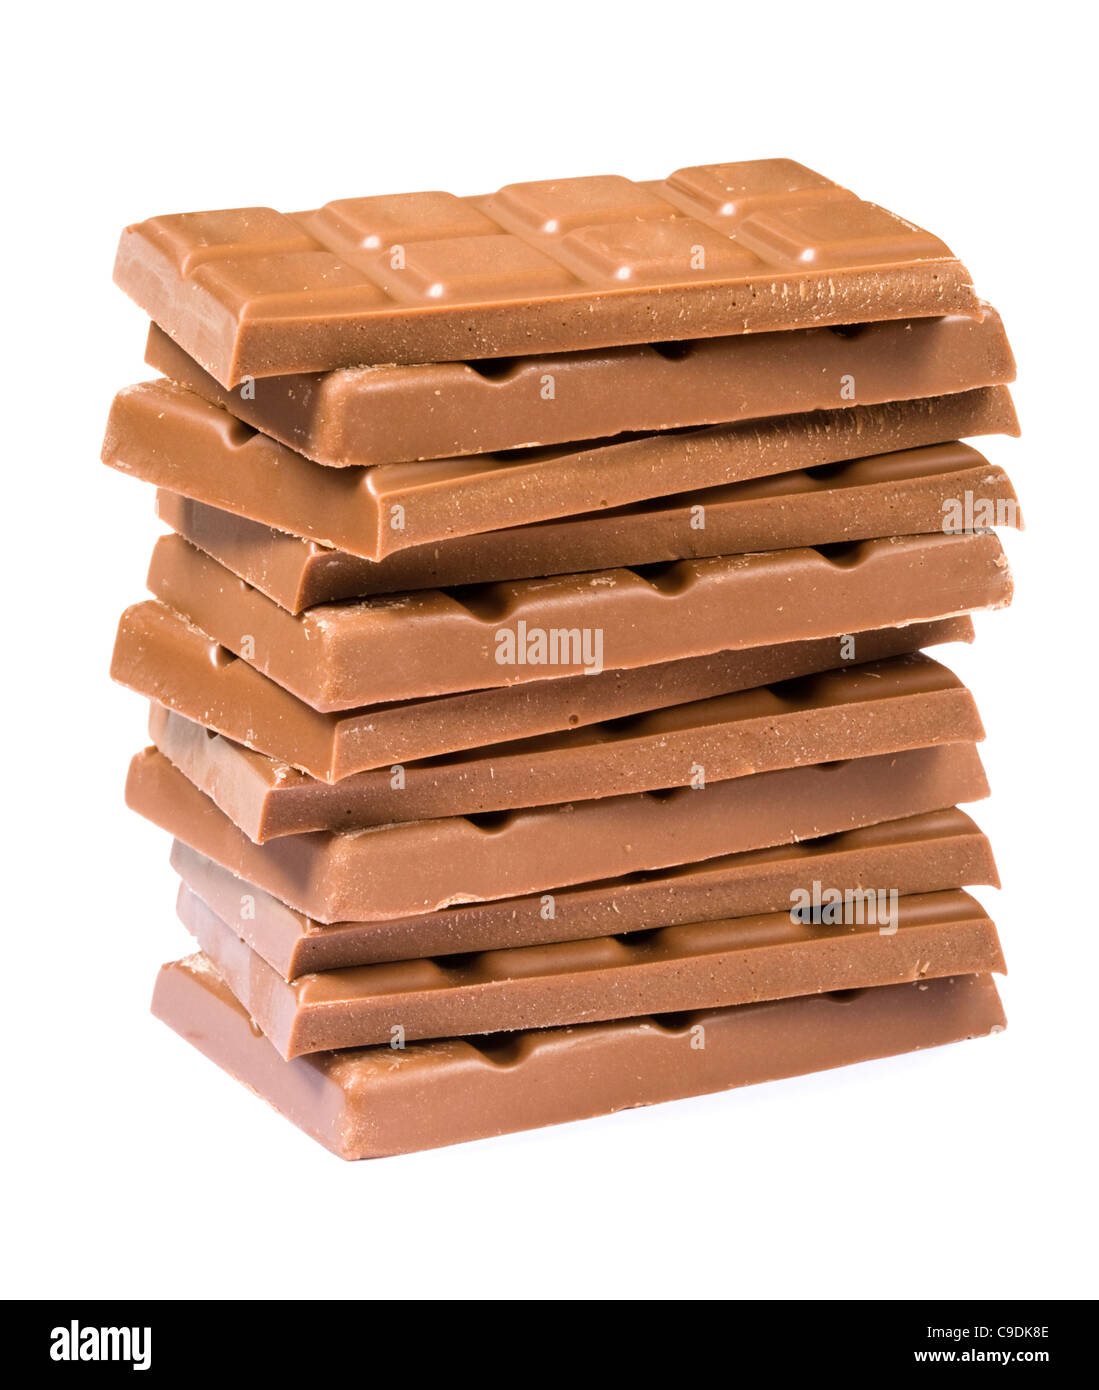 Pila de chocolate. Foto de stock